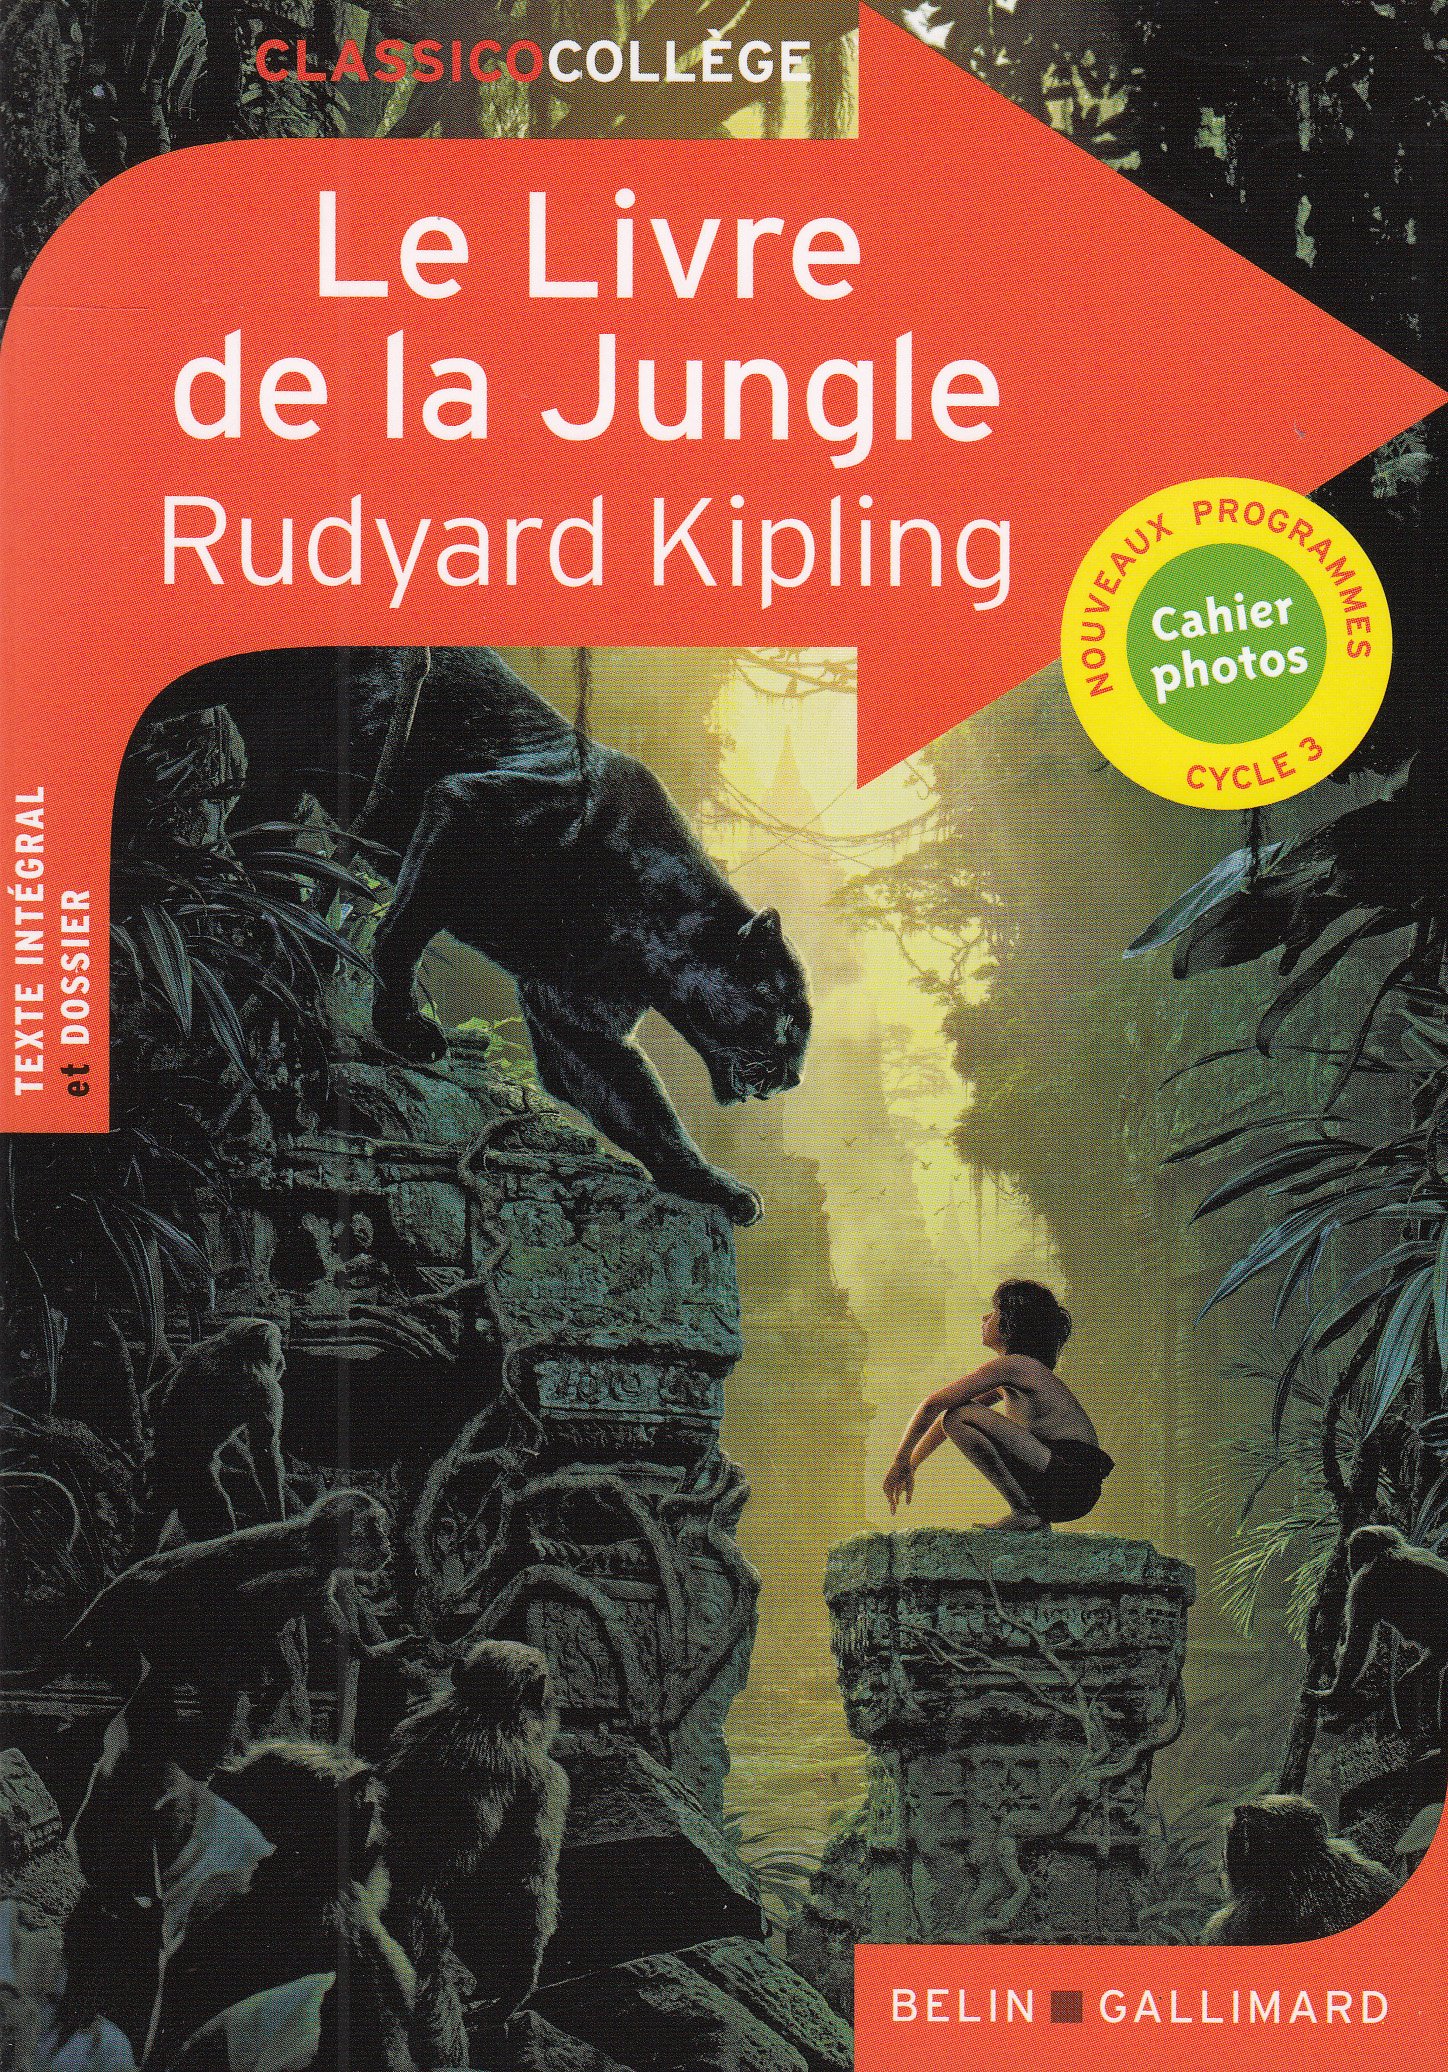 Le livre de la jungle kipling